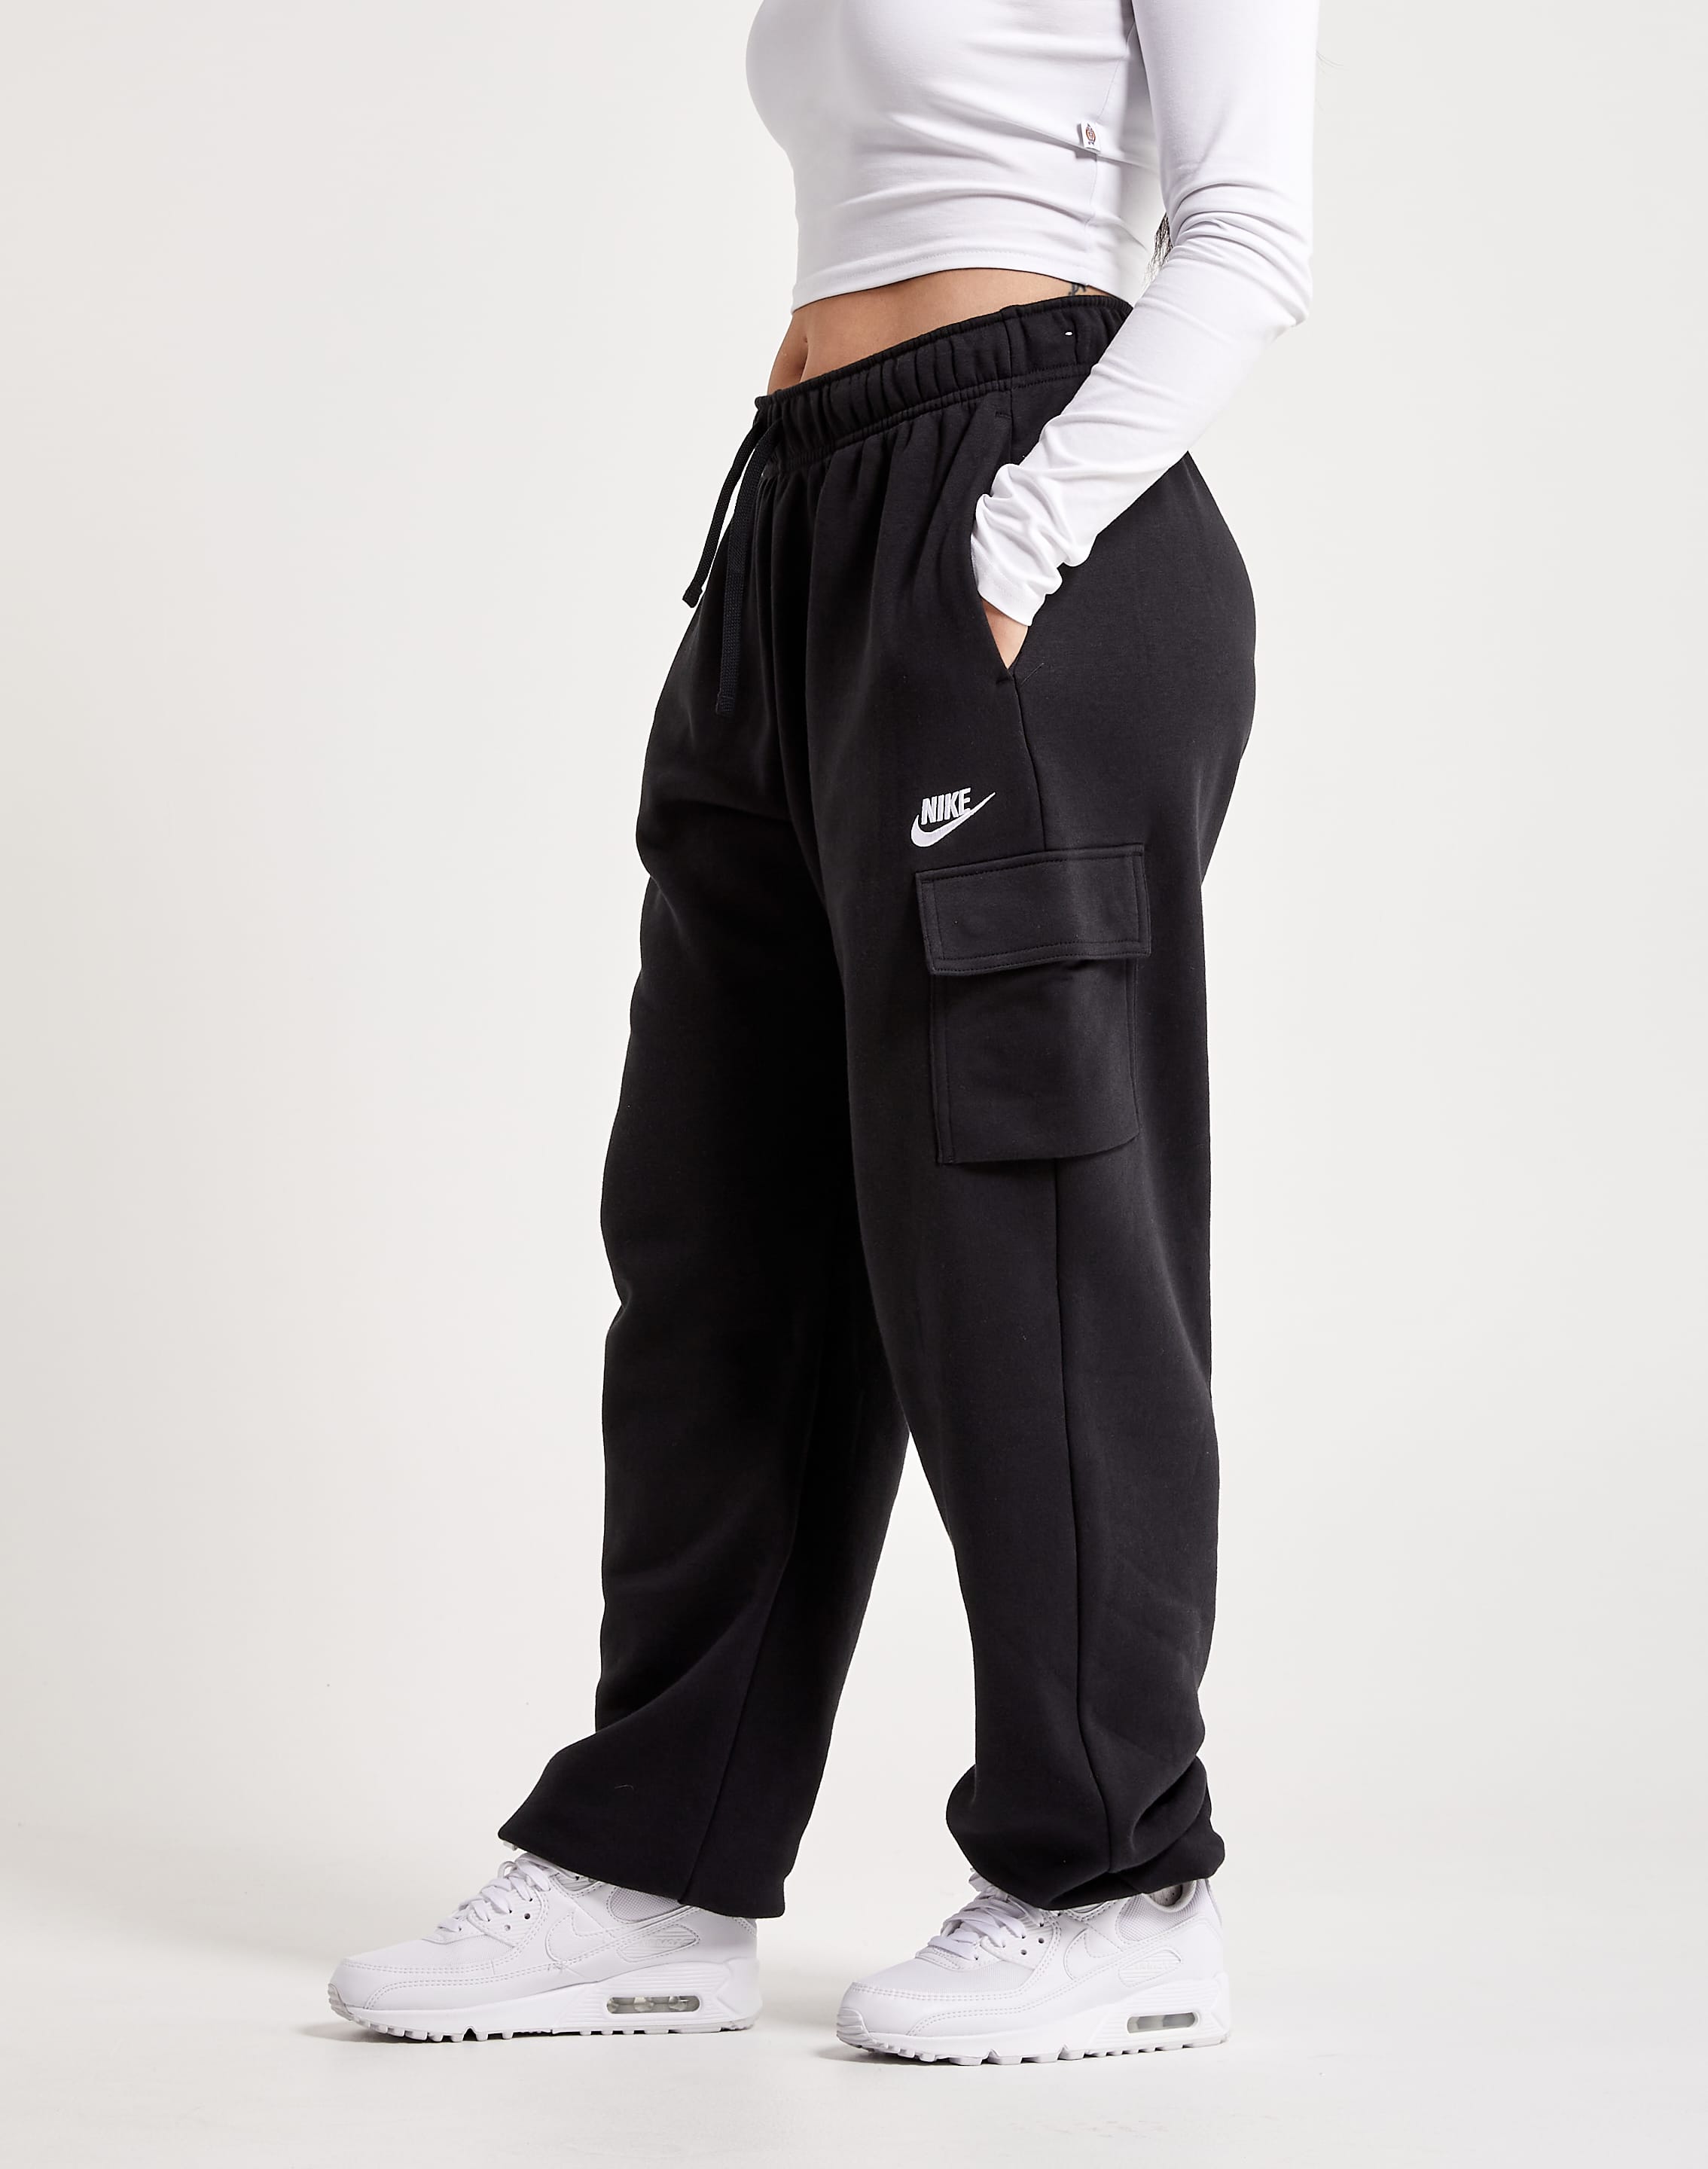 Nike Sportswear Men's Trousers. Nike VN